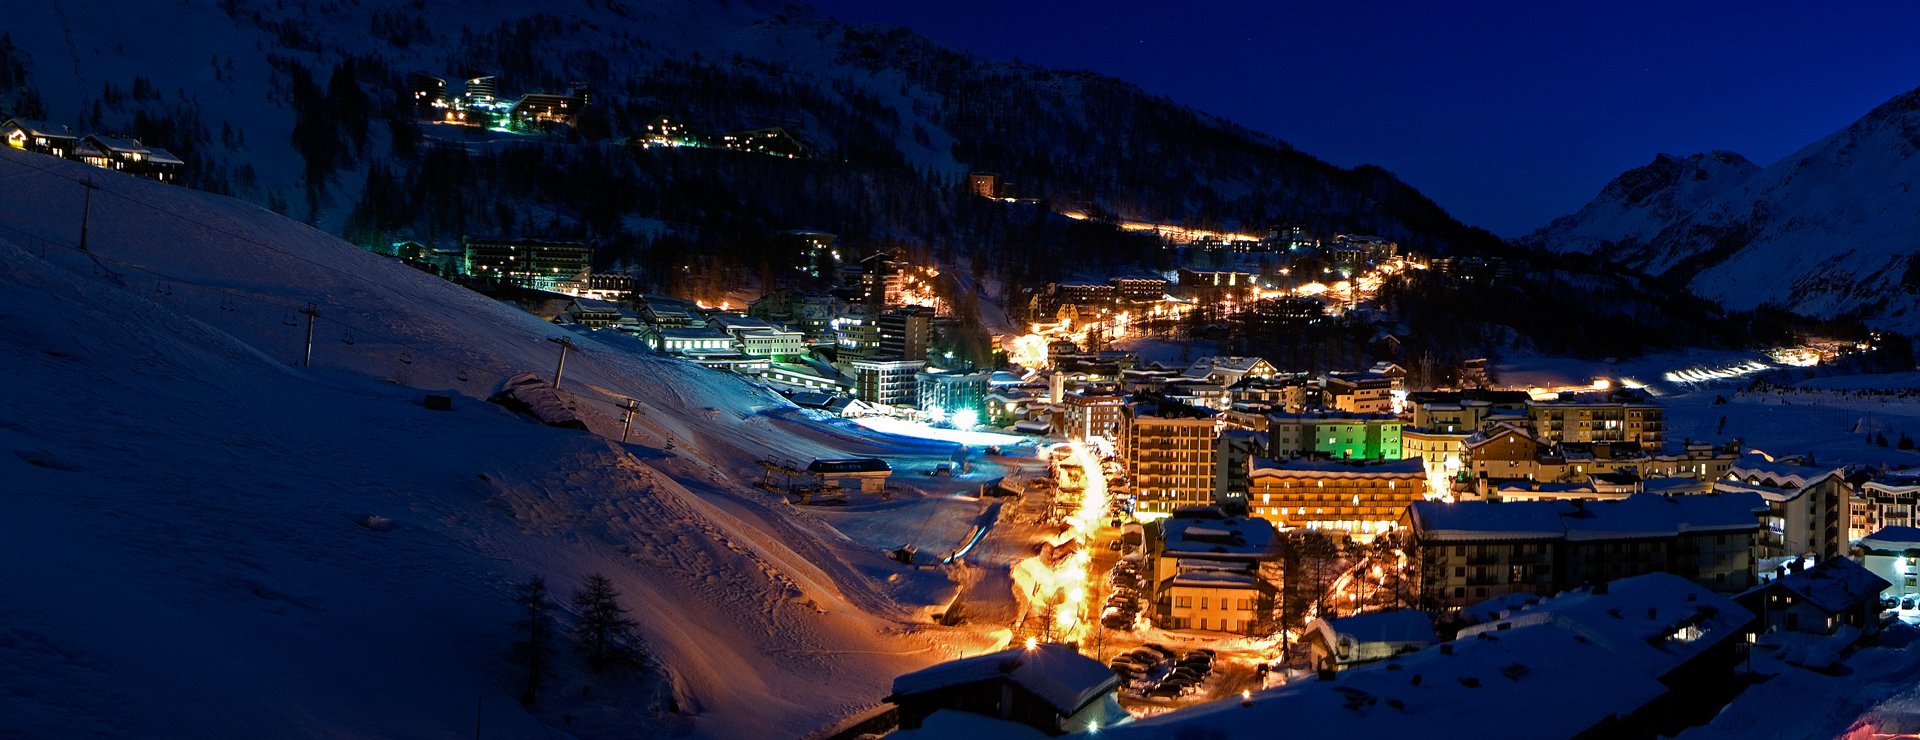 Italy Ski Resort Breuil Cervinia